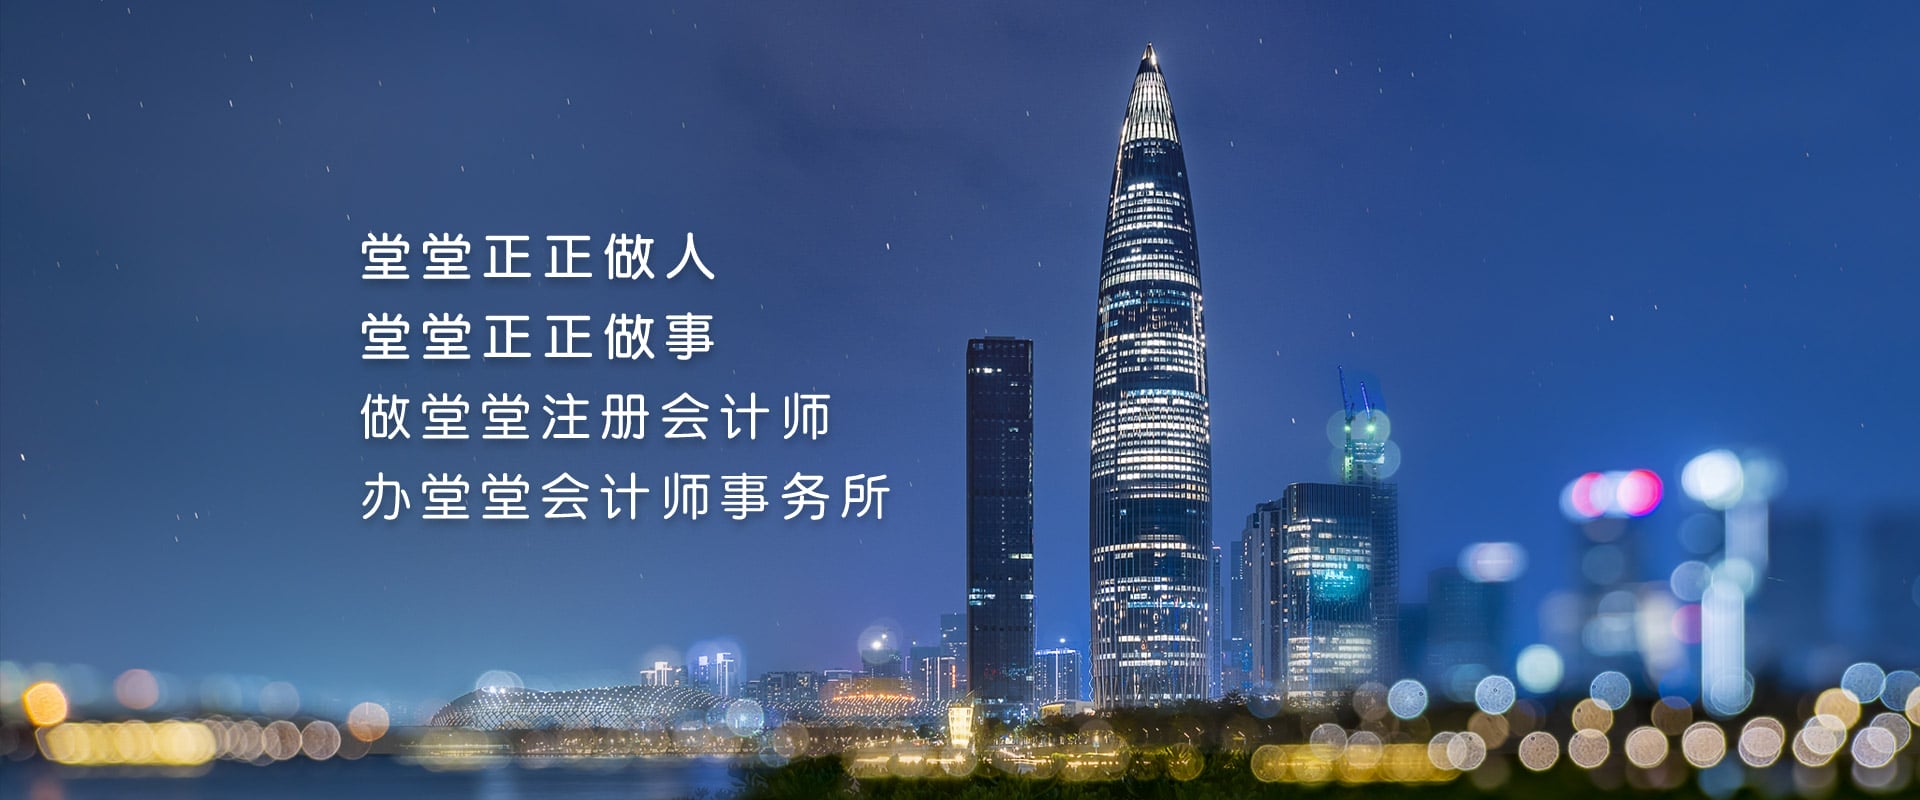 深圳市财政委员会关于印发《关于加快我市注册会计师行业发展的实施意见》的通知